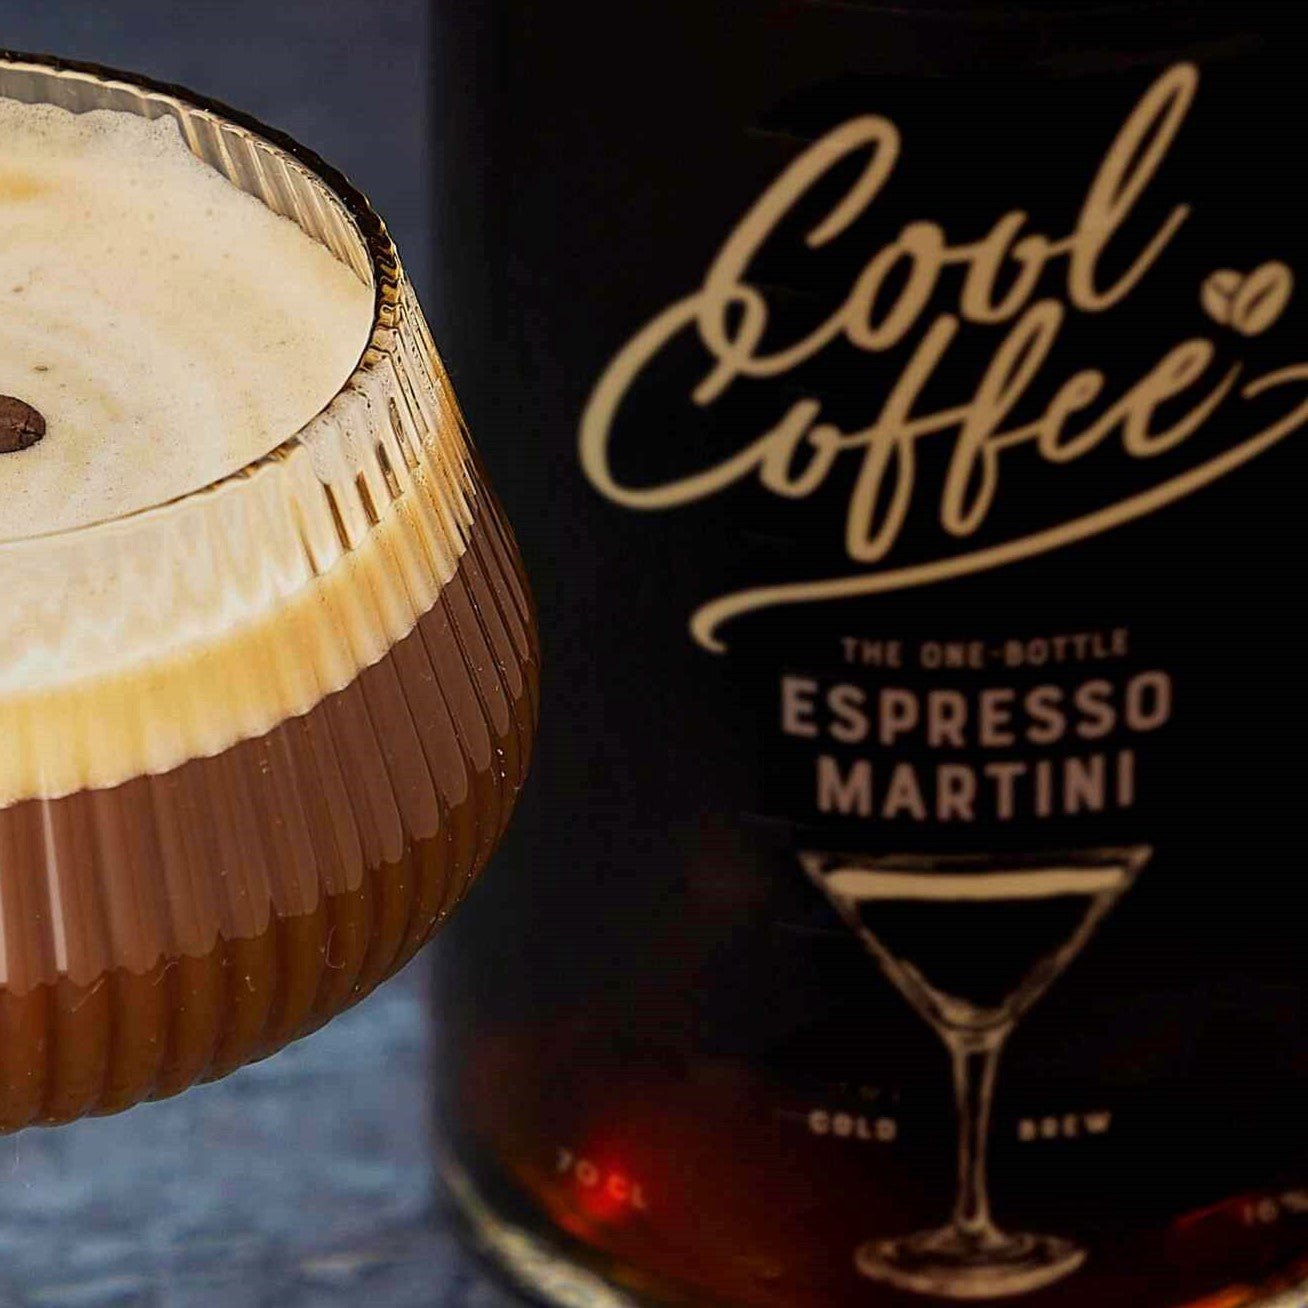 Cool Coffee - Espresso Martini 16%